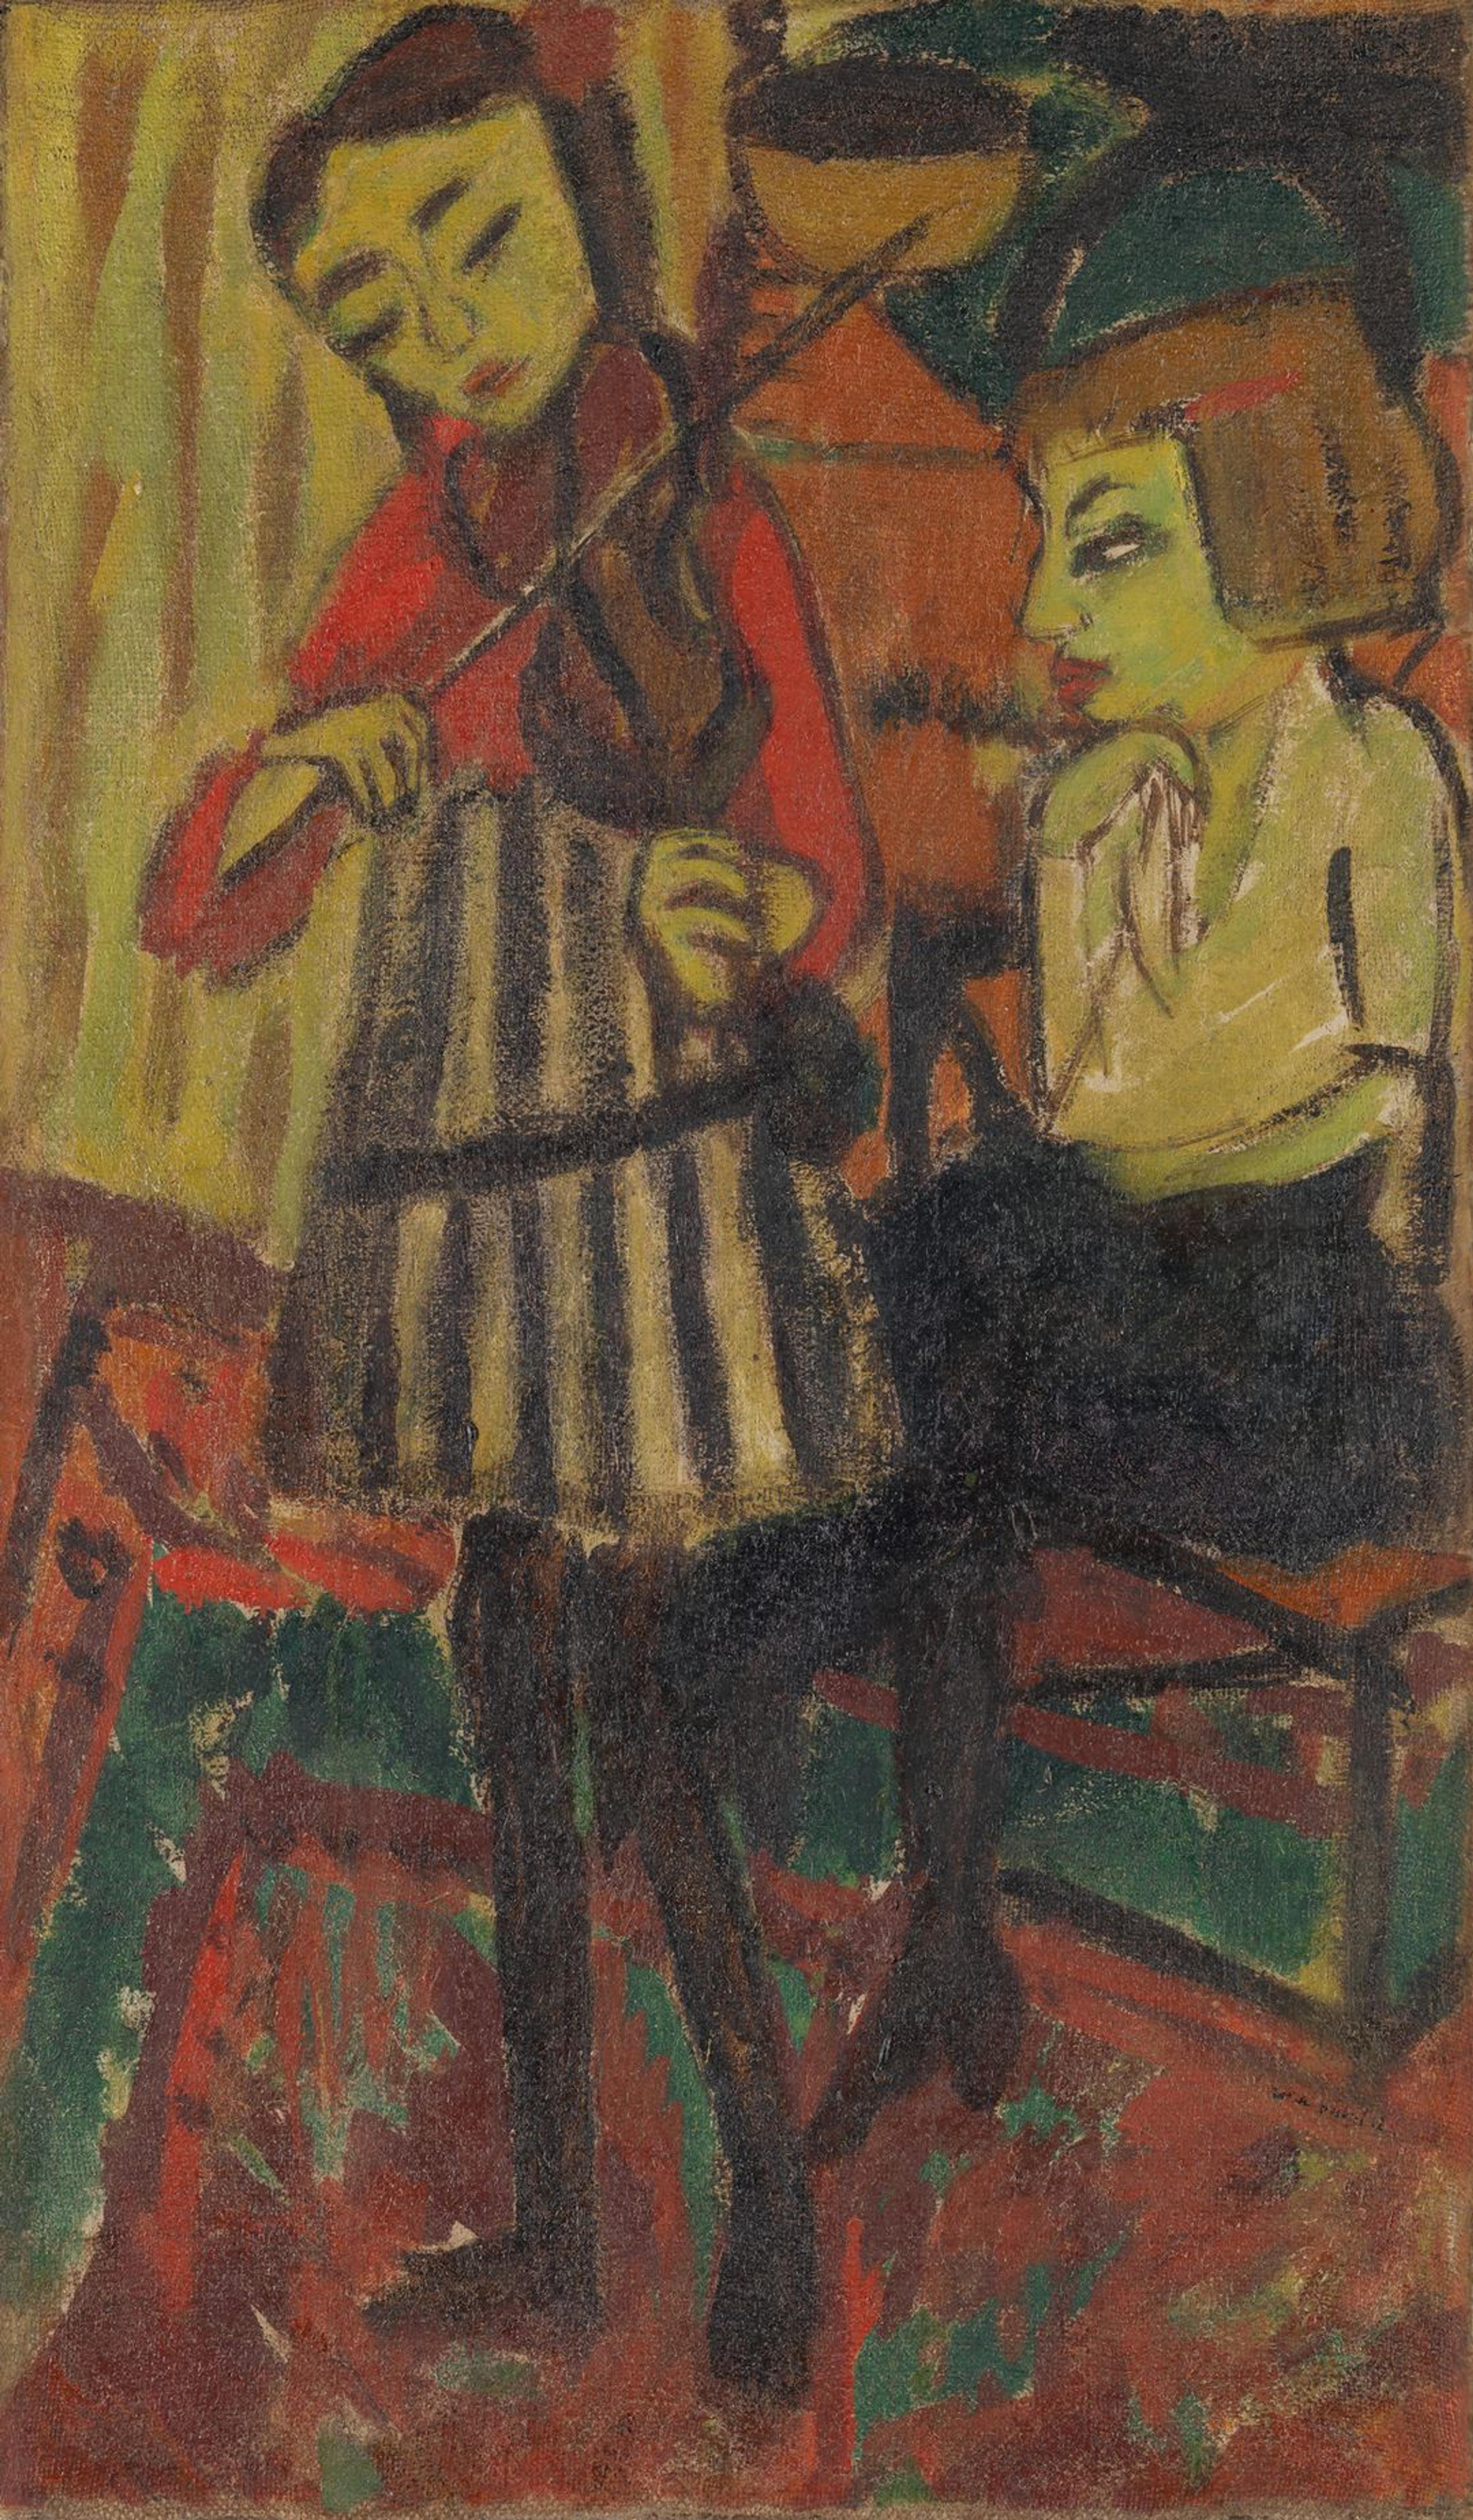 Et maleri viser en kvinne som spiller fiolin mens en annen kvinne sitter til høyre og lytter. Det er utført i røde og grønne toner med sorte omriss.